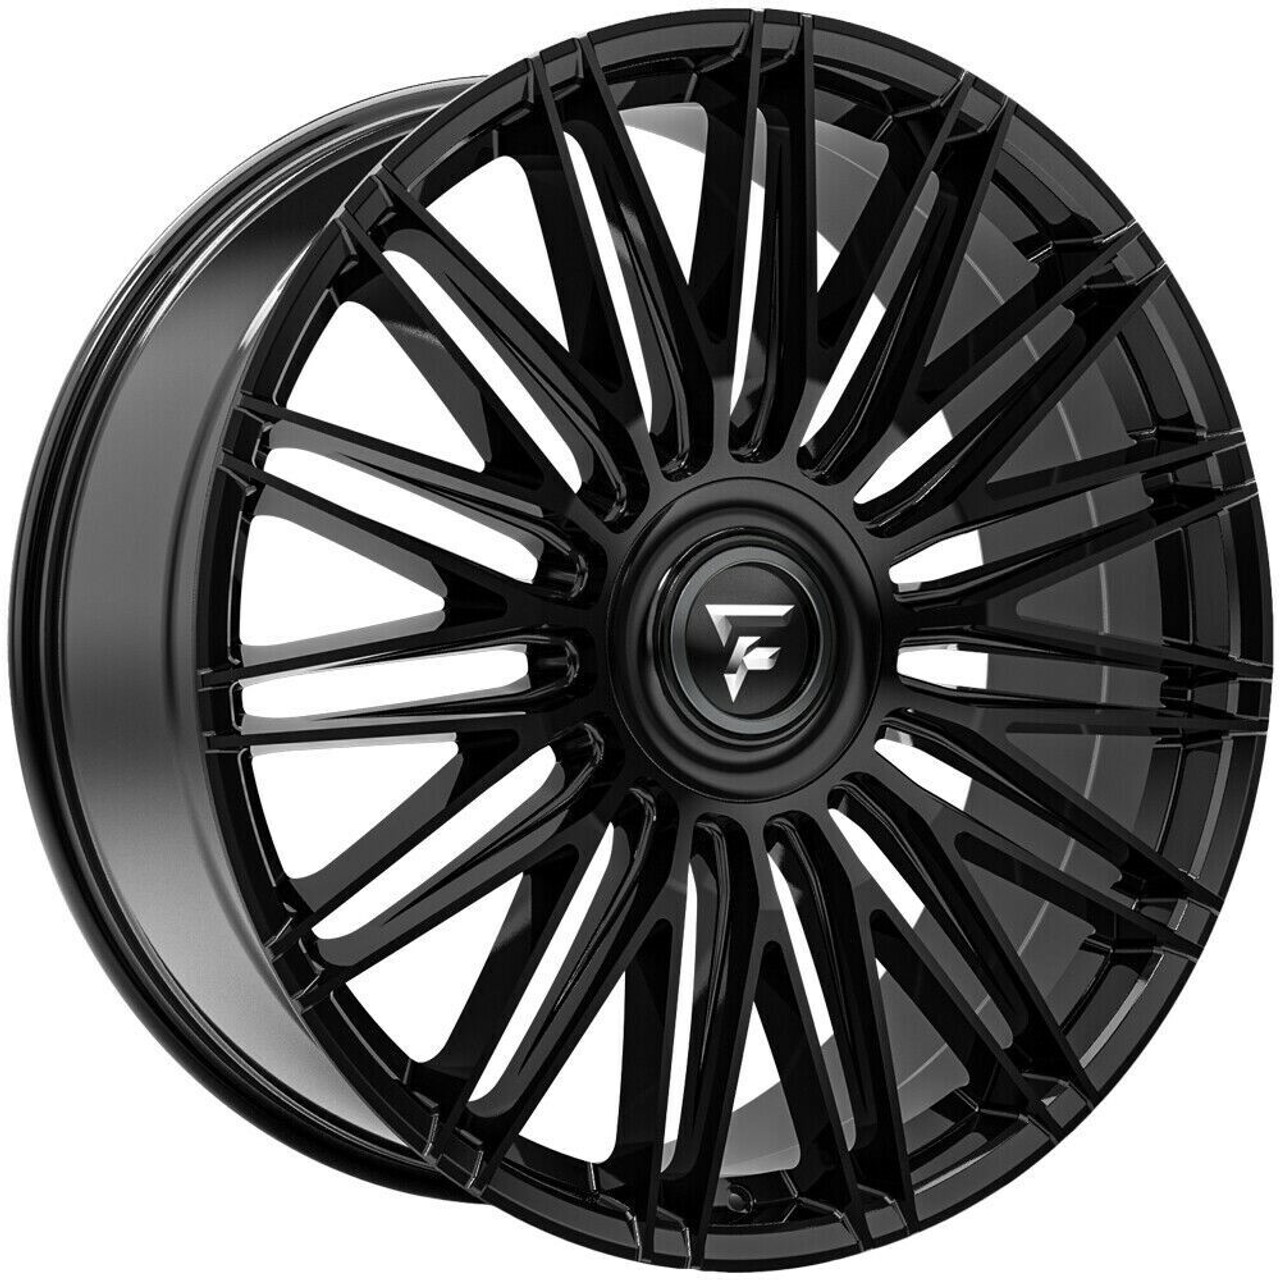 24" Fittipaldi Street FS369B Gloss Black 24x10 Wheel 5x112 5x120 35mm Rim